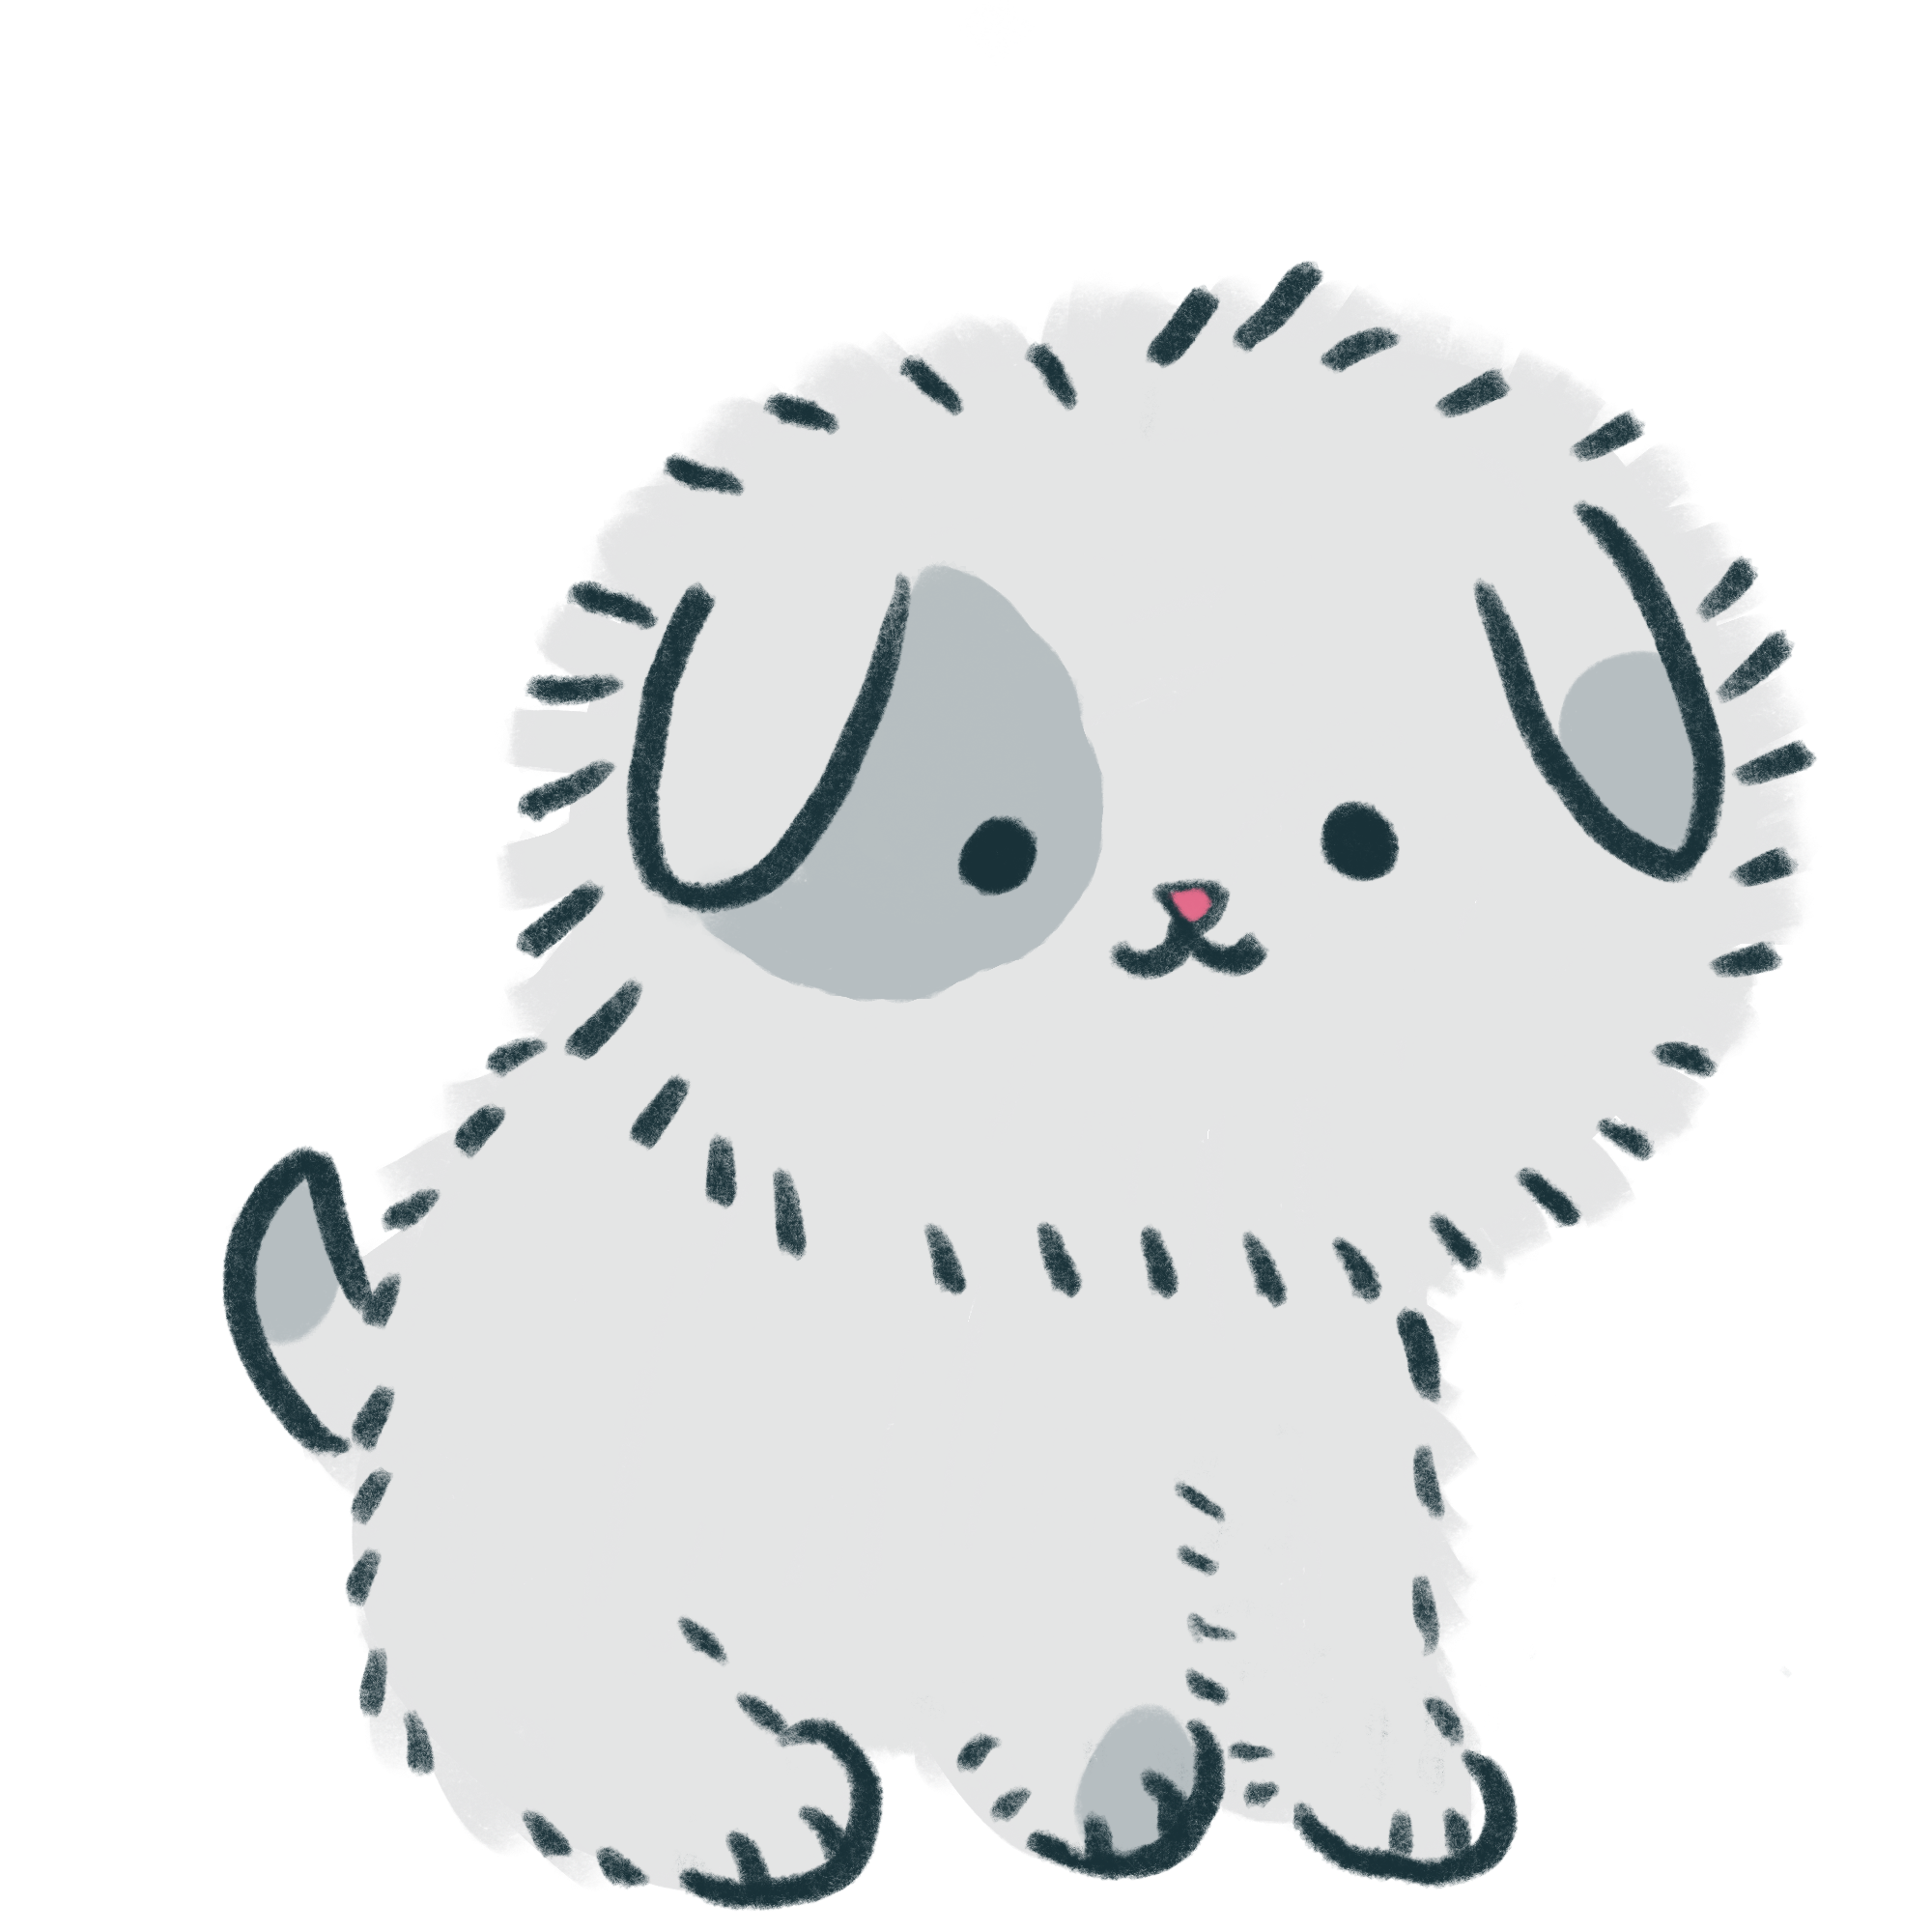 illustration of a dog